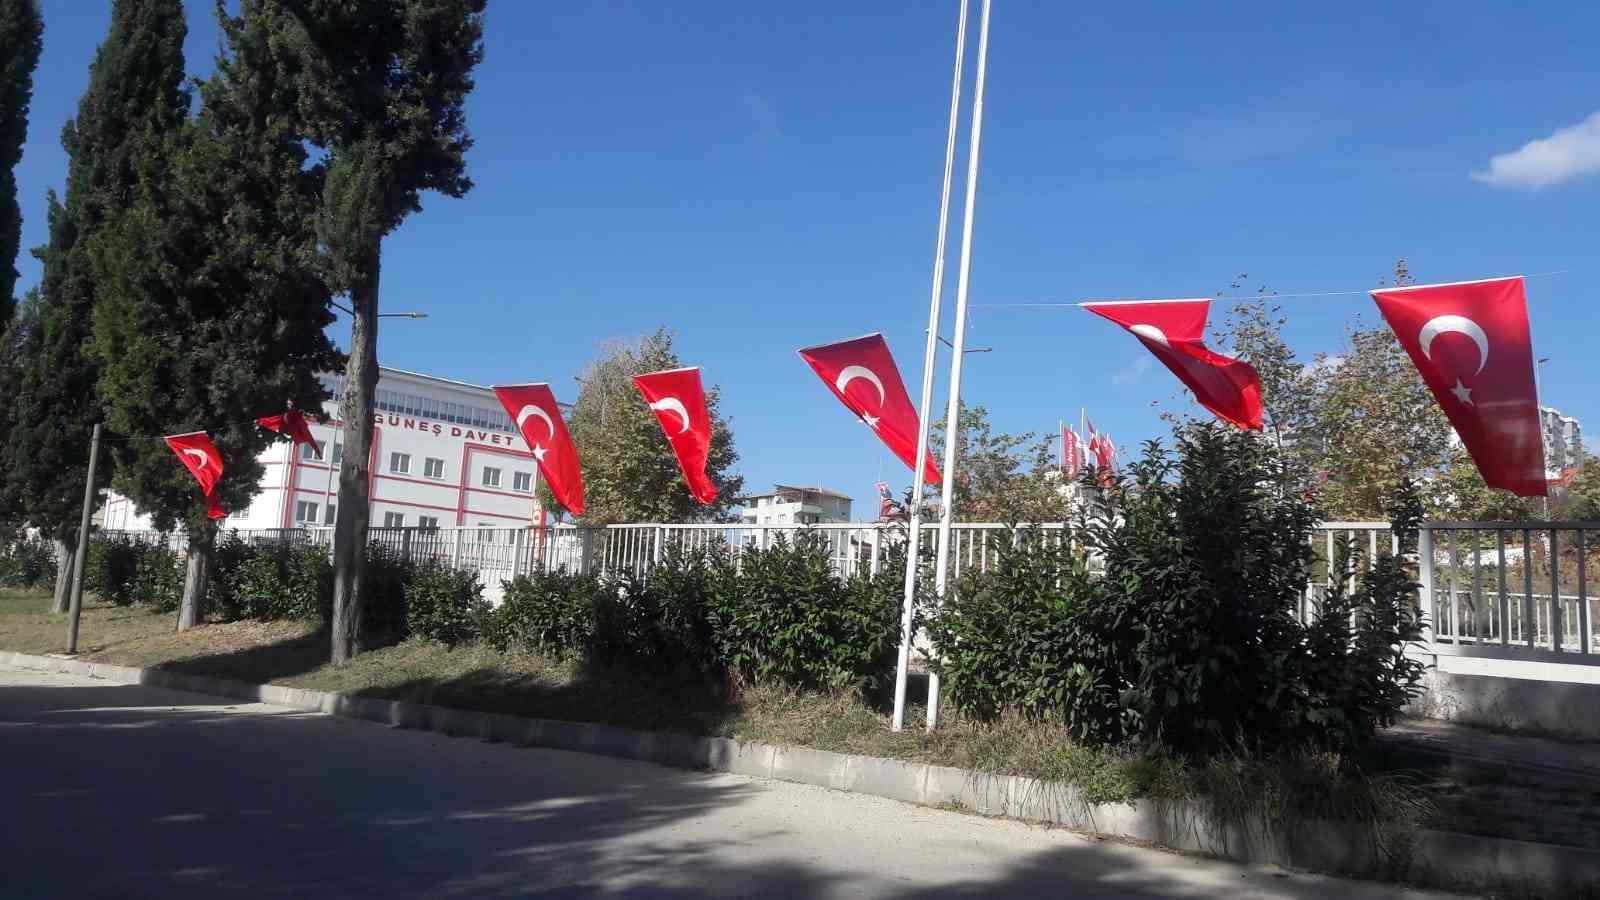 Küçük Sanayi Sitesi Türk bayraklarıyla donatıldı